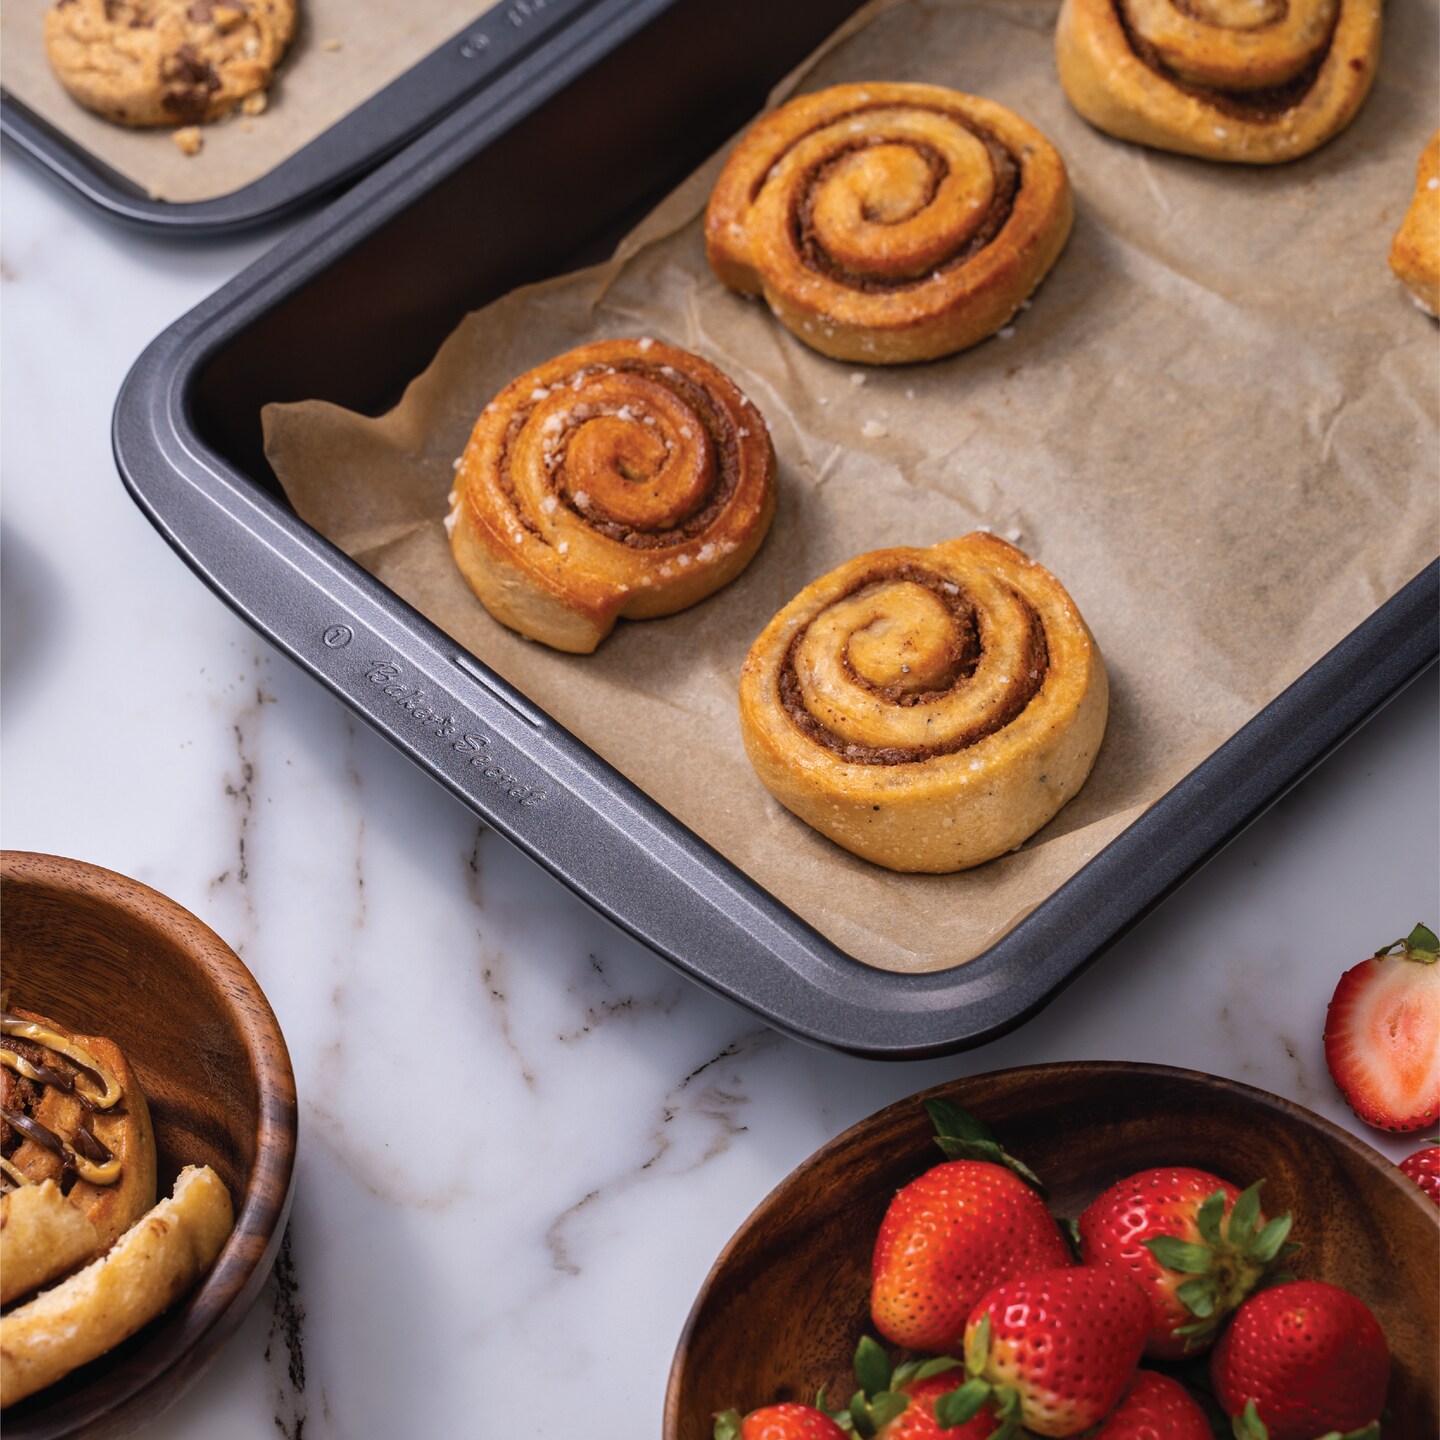 Baker's Secret Stackable Baking Set of 5 Bakeware Pans, Bakeware Set, Baking  Pan Set Includes Muffin Pan, Roaster Pan, Square Pan, Cookie Sheet, Loaf Pan,  Baking Supplies